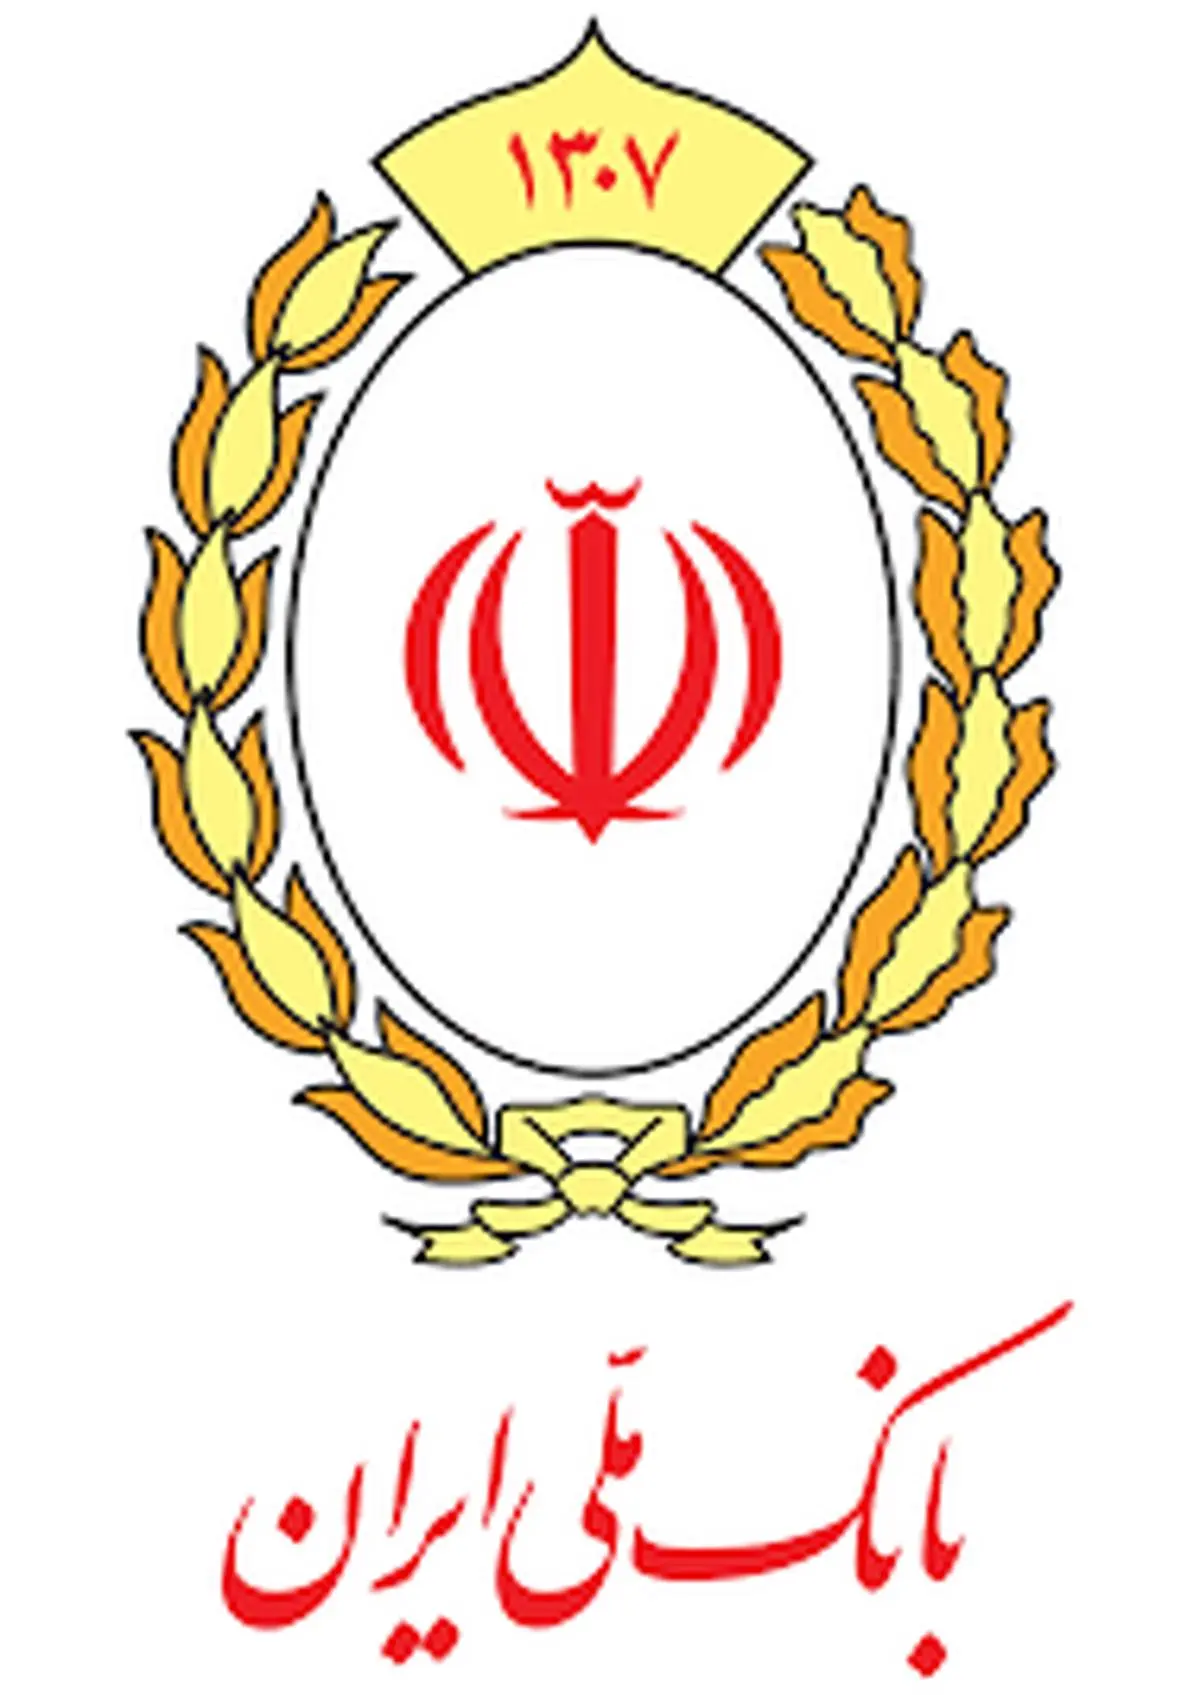 روایت «شاپرک» از رتبه های برتر بانک ملی ایران

